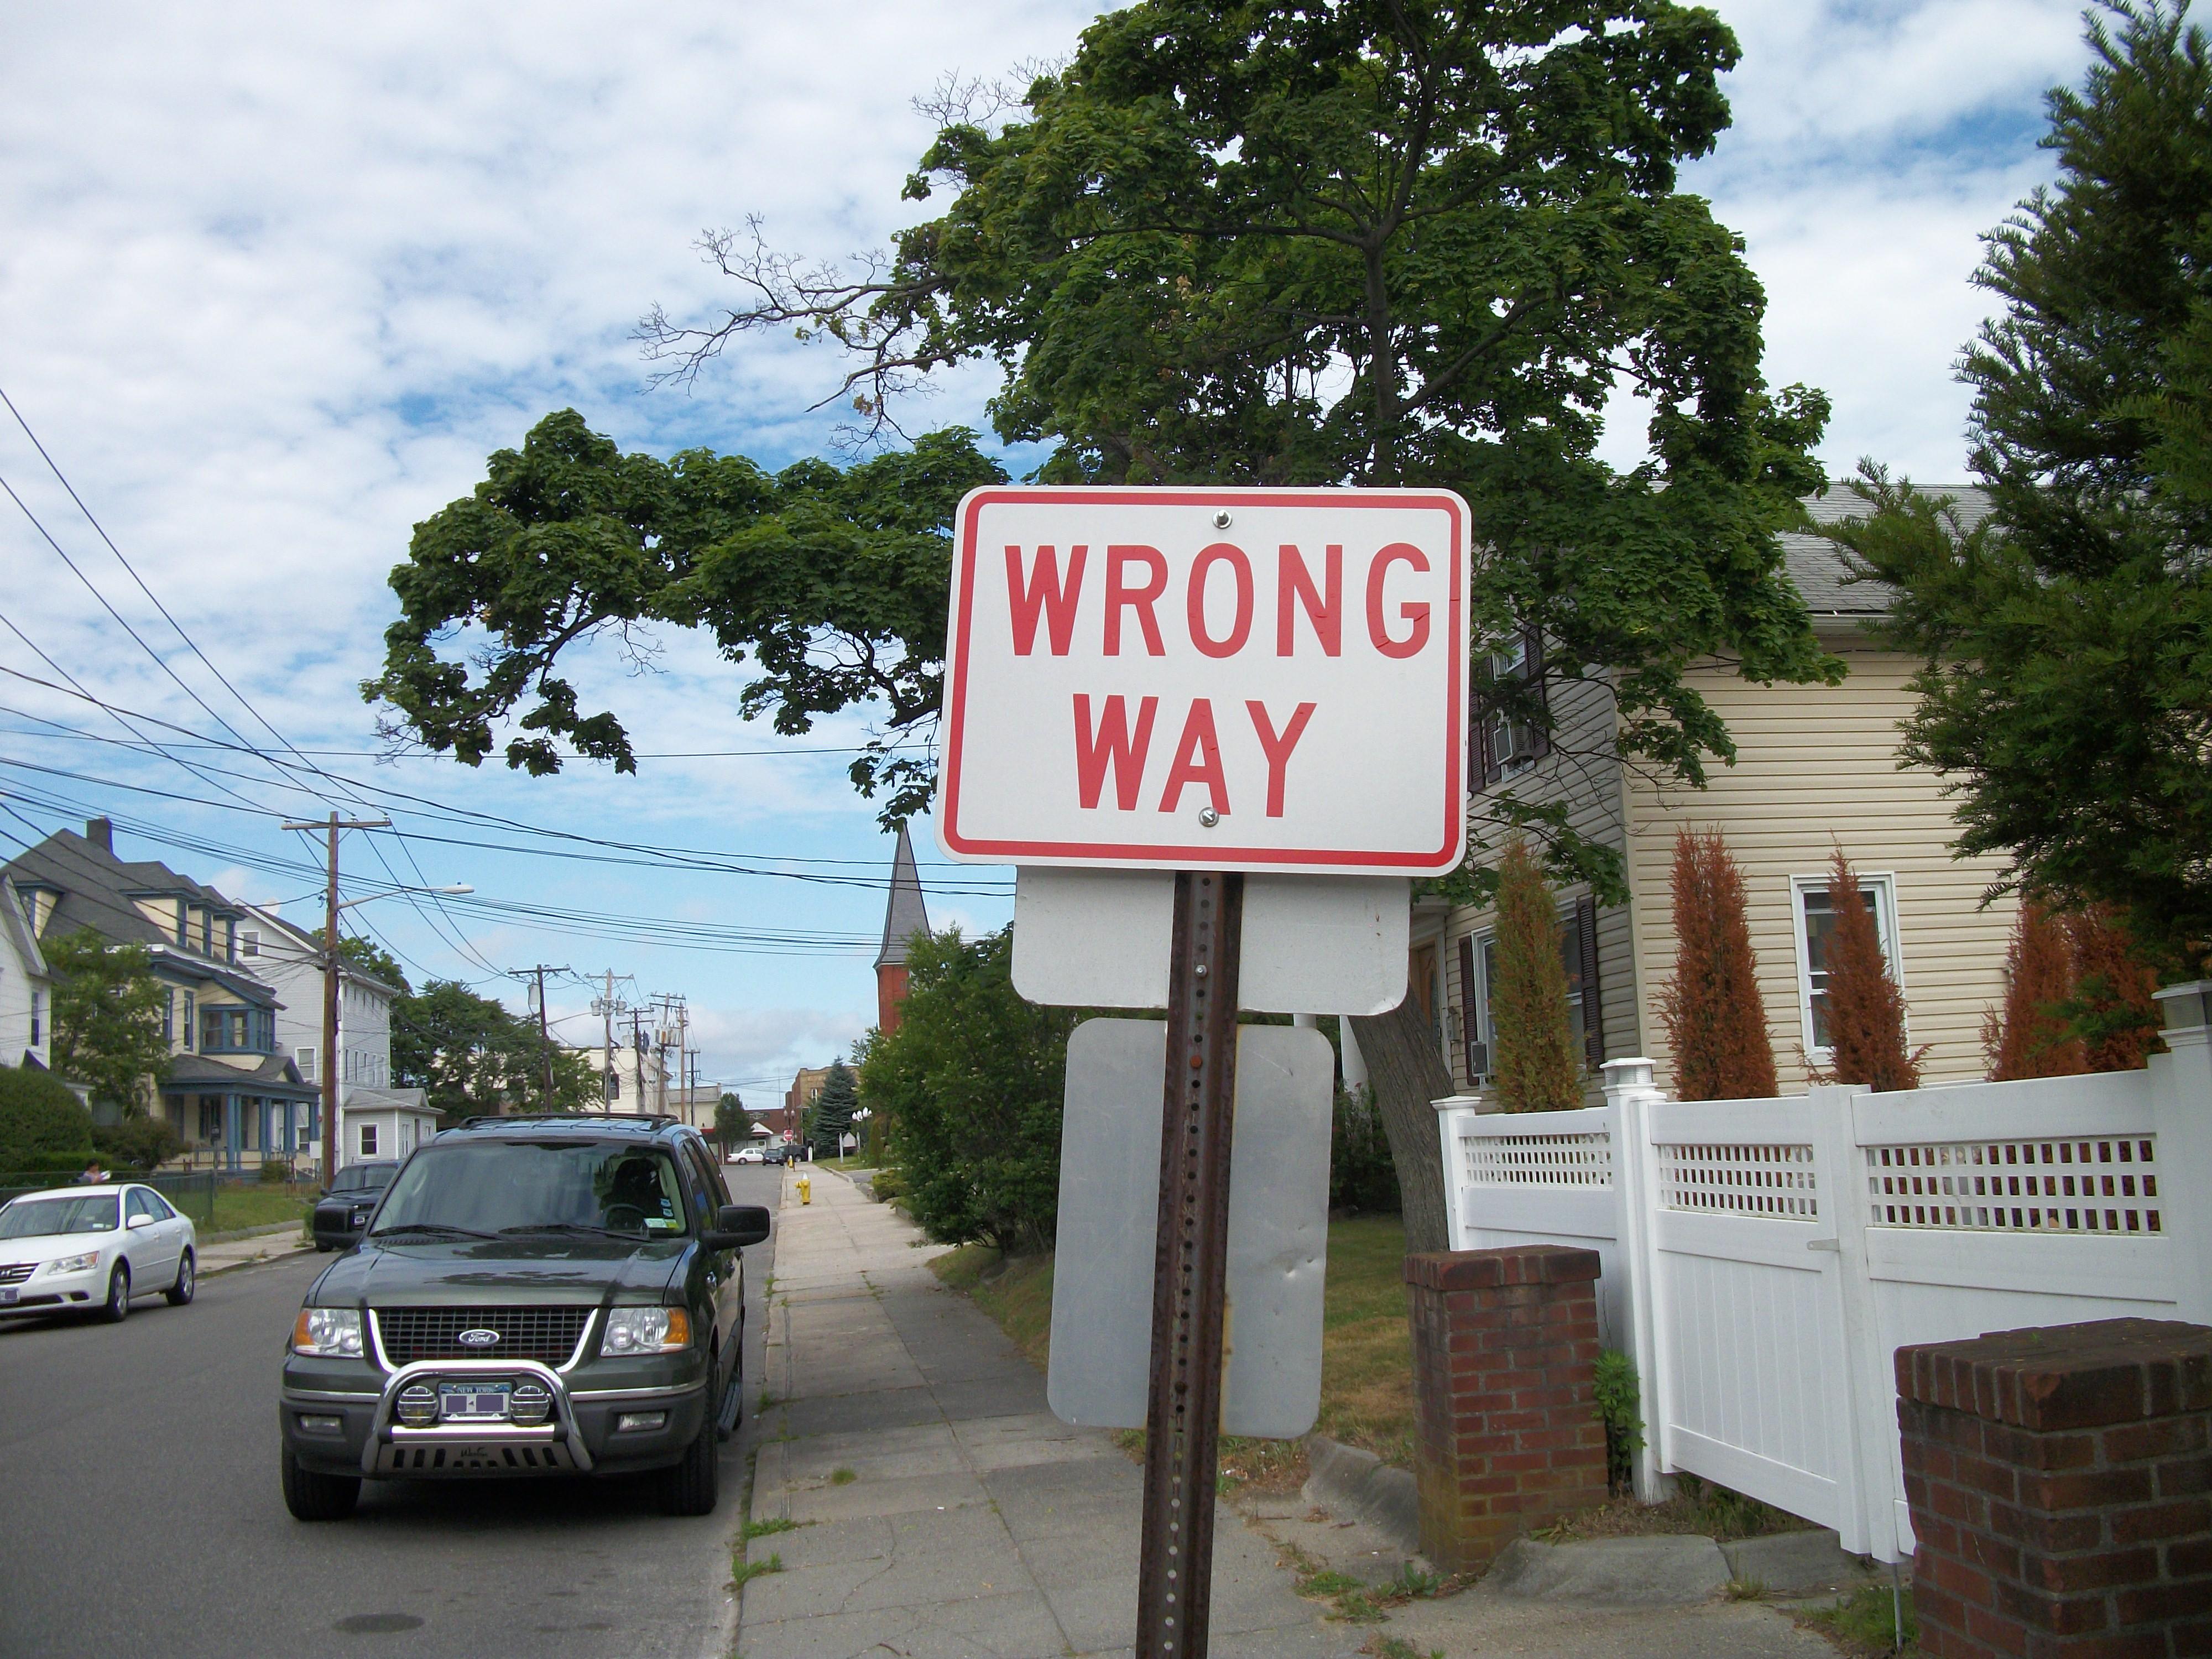 Way sign. Wrong way sign. Wrong way. Way sign in USA.